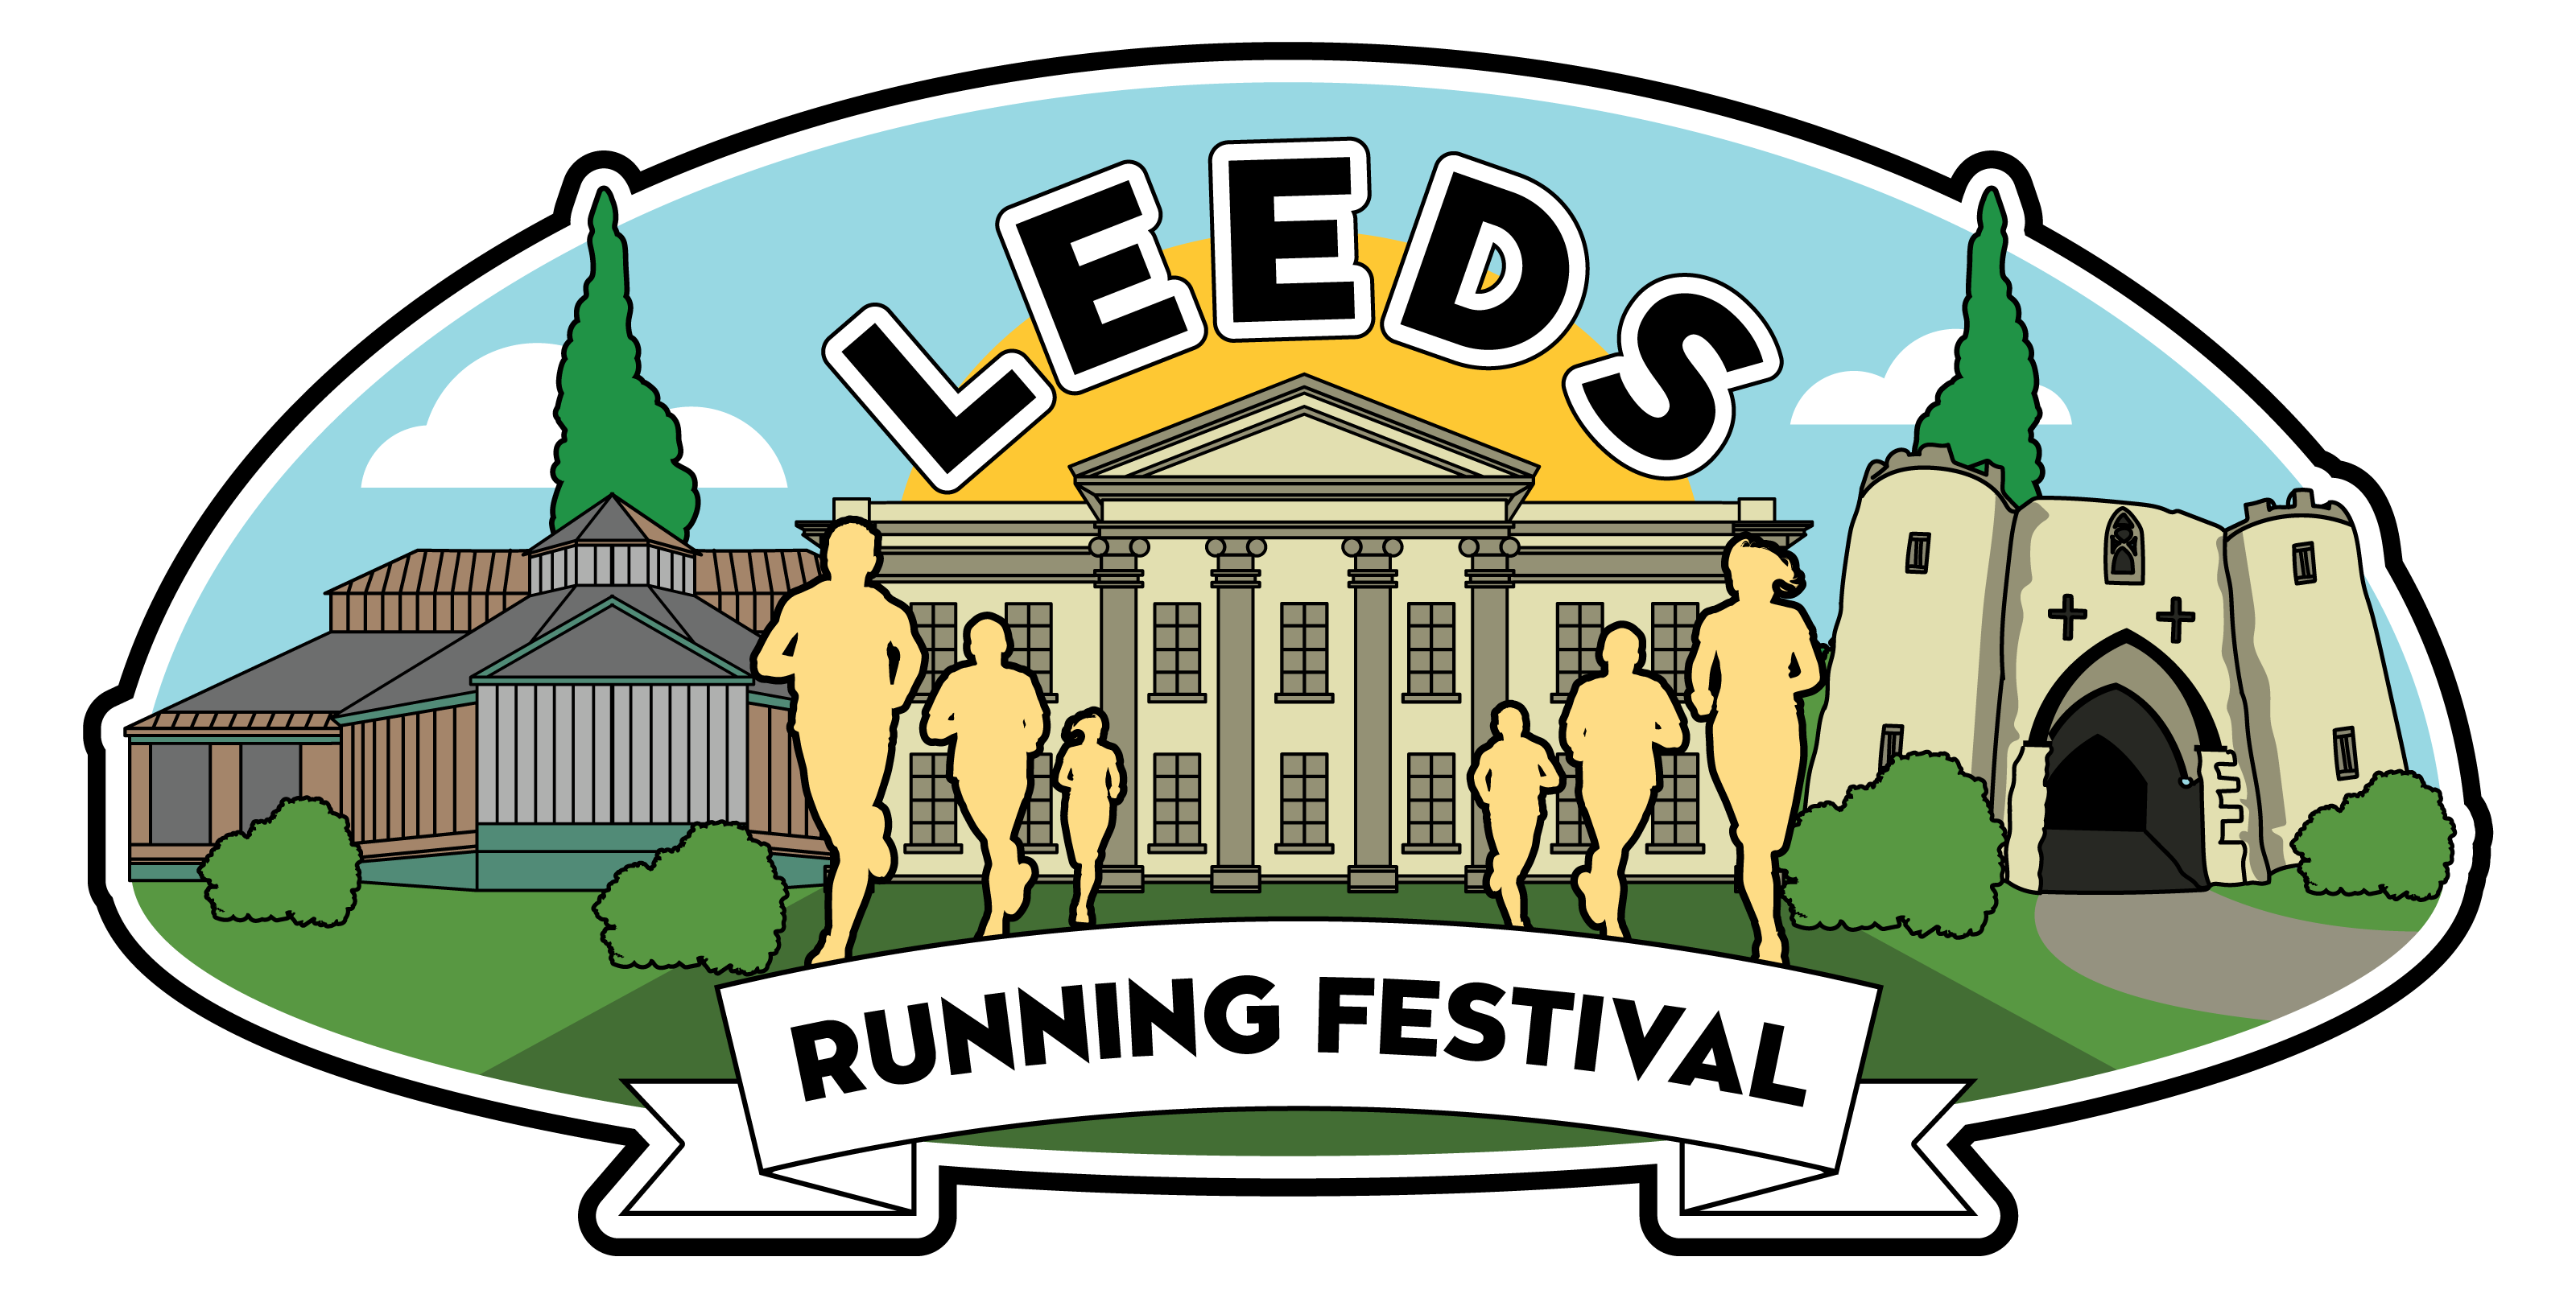 Leeds Running Festival 5K - August